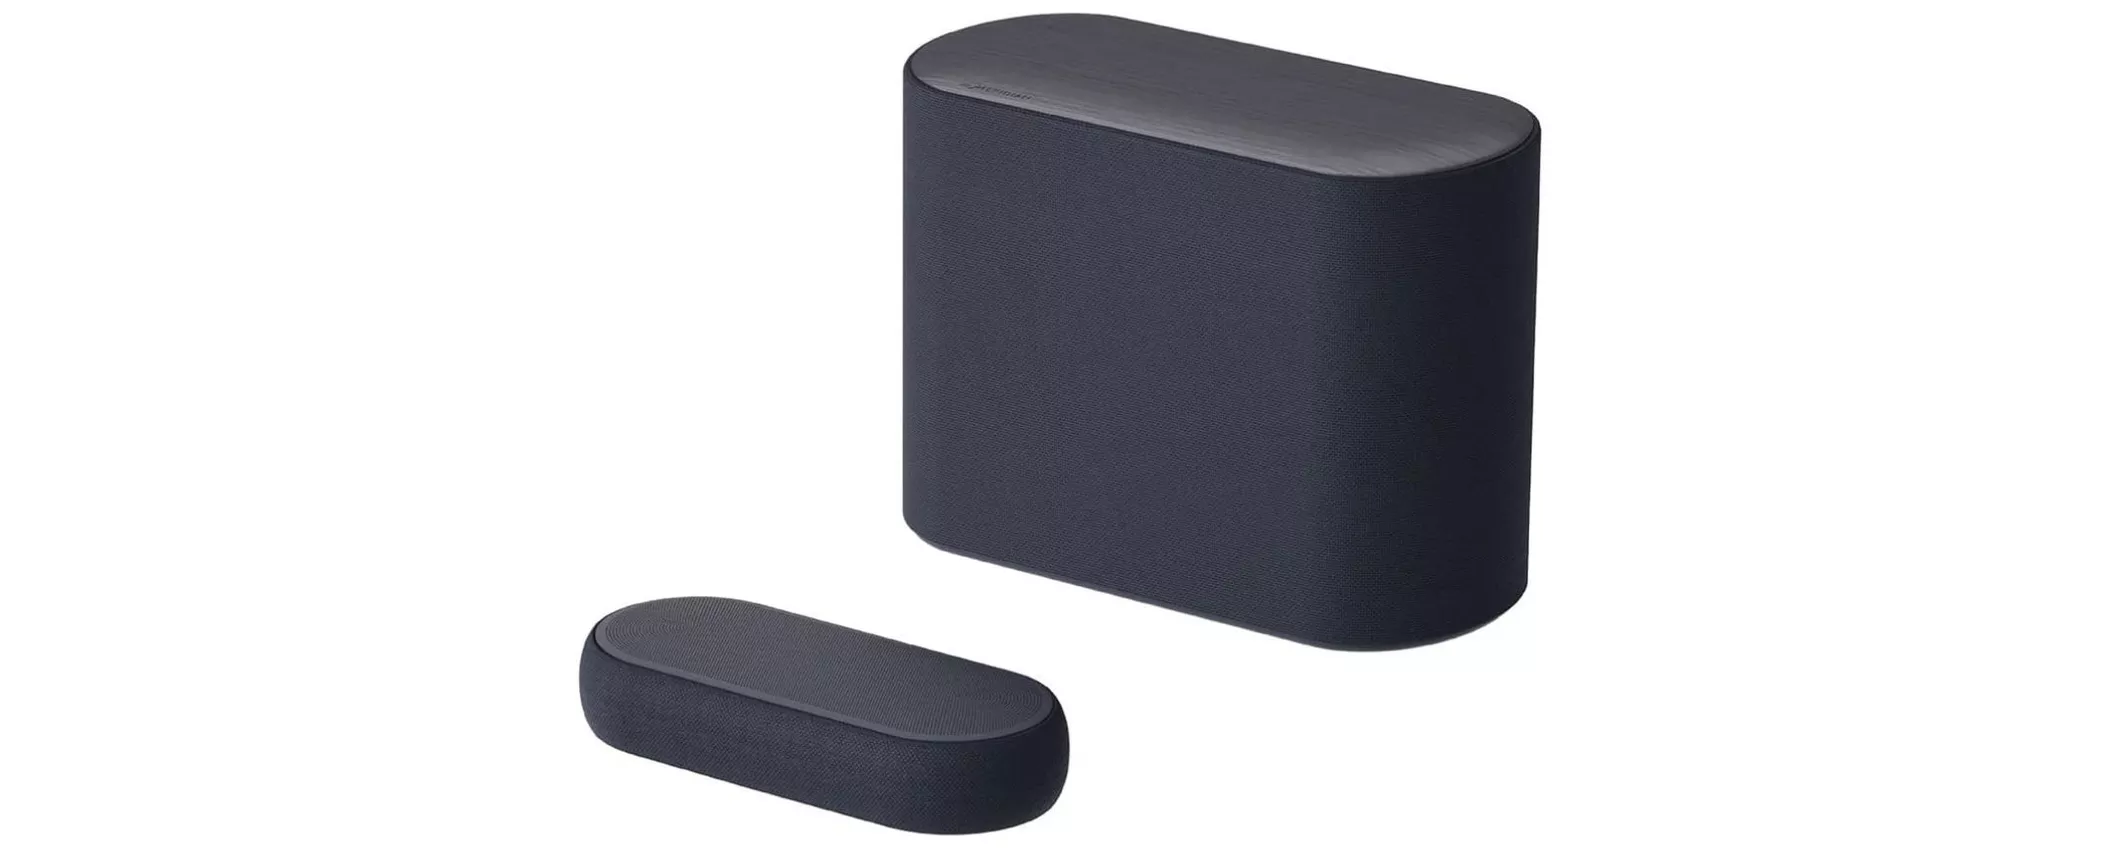 LG QP5 Soundbar da 320W con Subwoofer Wireless: 50% di sconto su Amazon